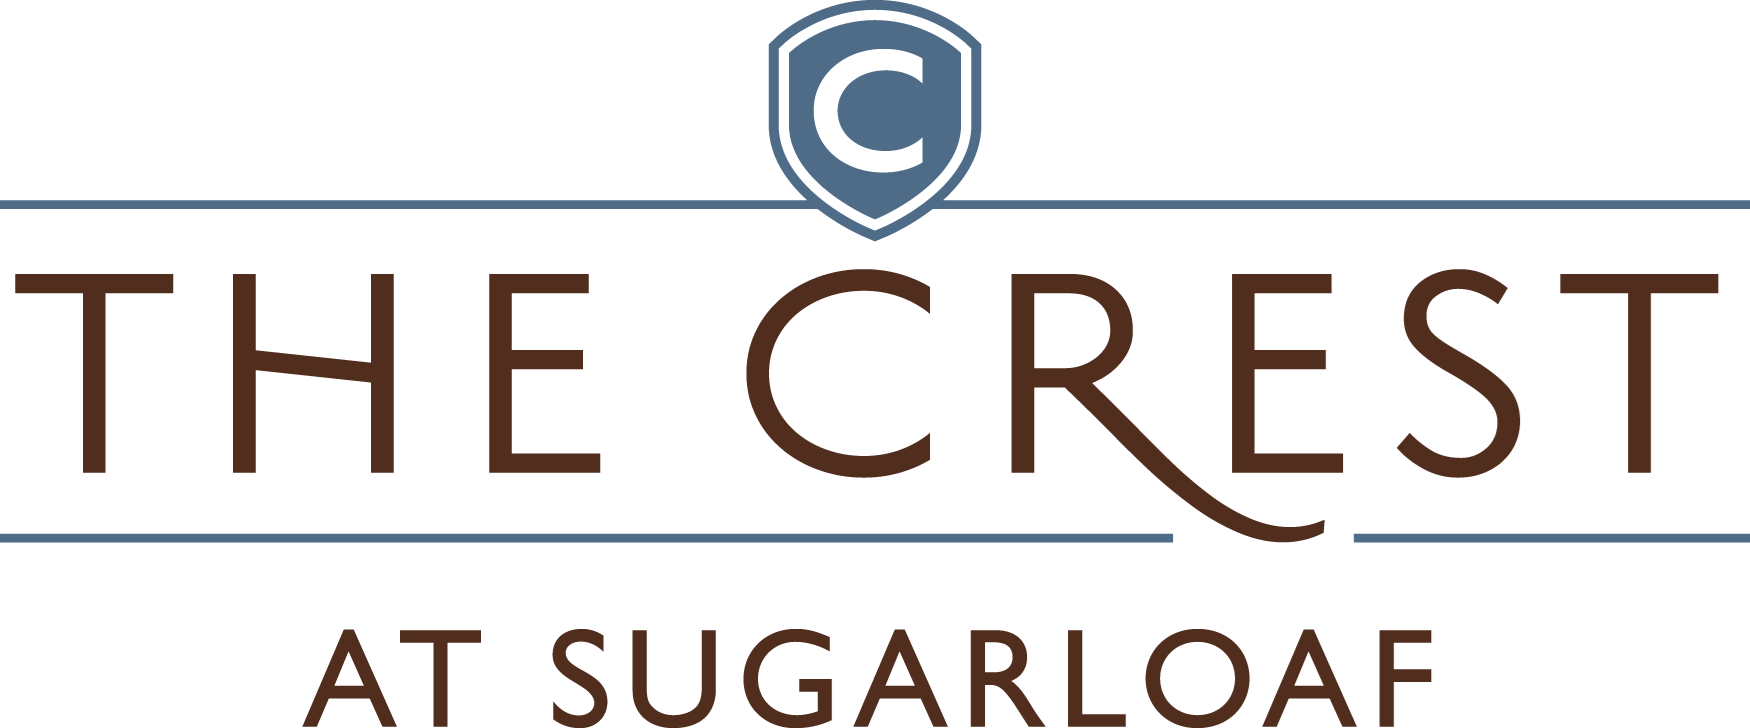 Sugarloaf Logo - The Crest at Sugarloaf. Apartments in Lawrenceville, GA